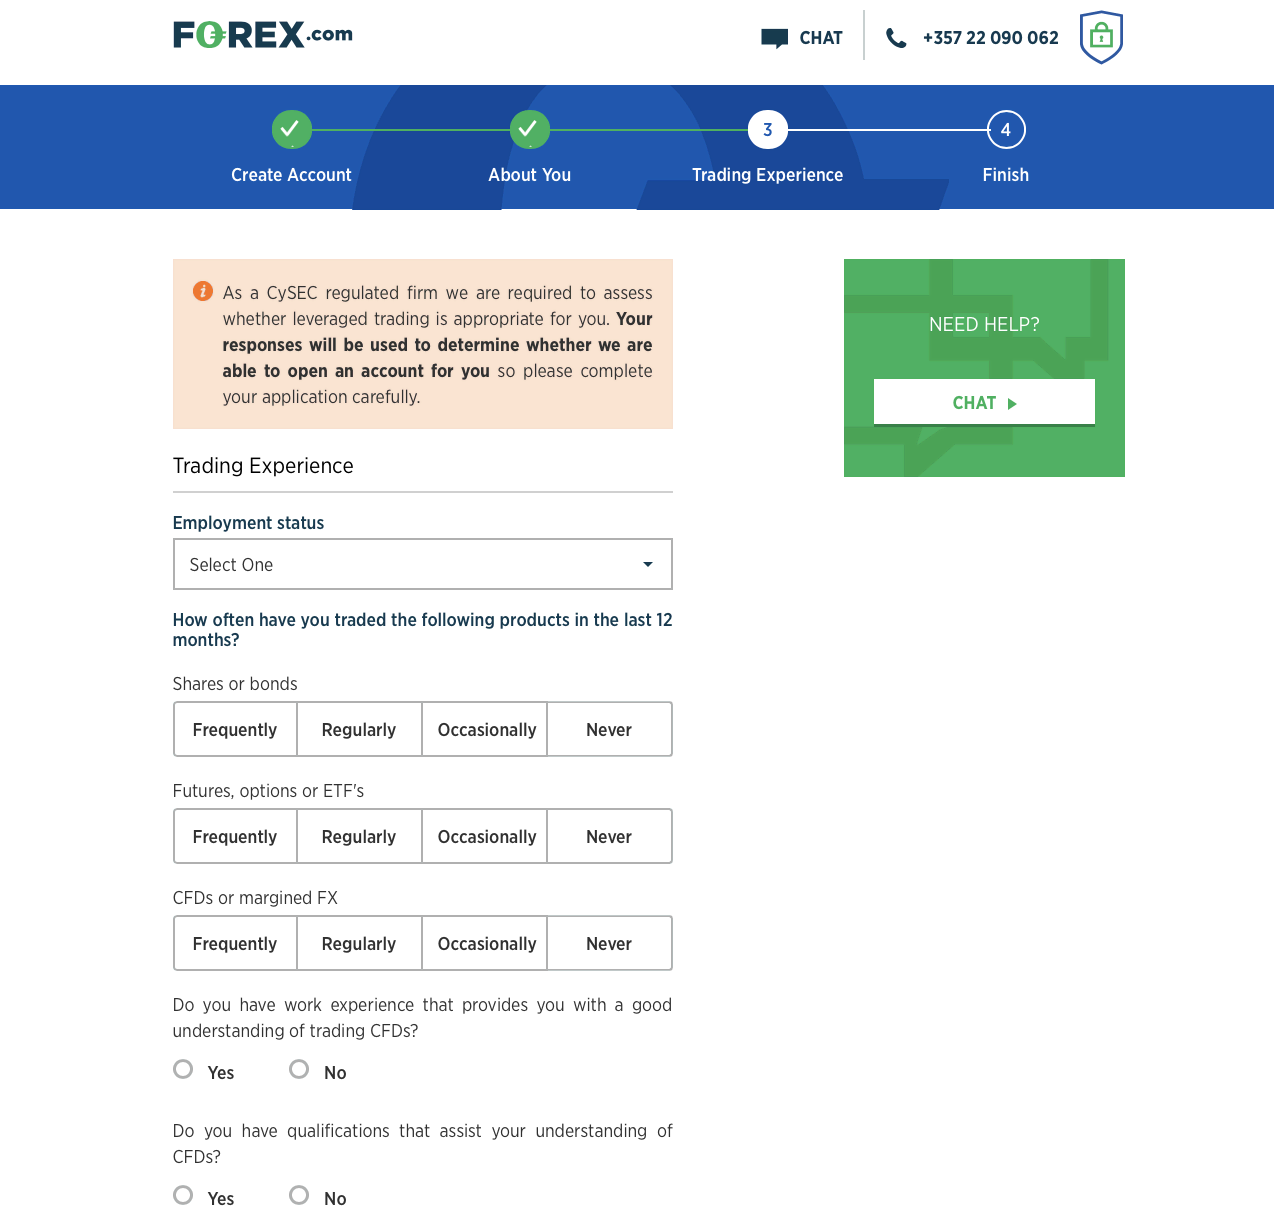 Menjawab beberapa pertanyaan tentang Forex.com